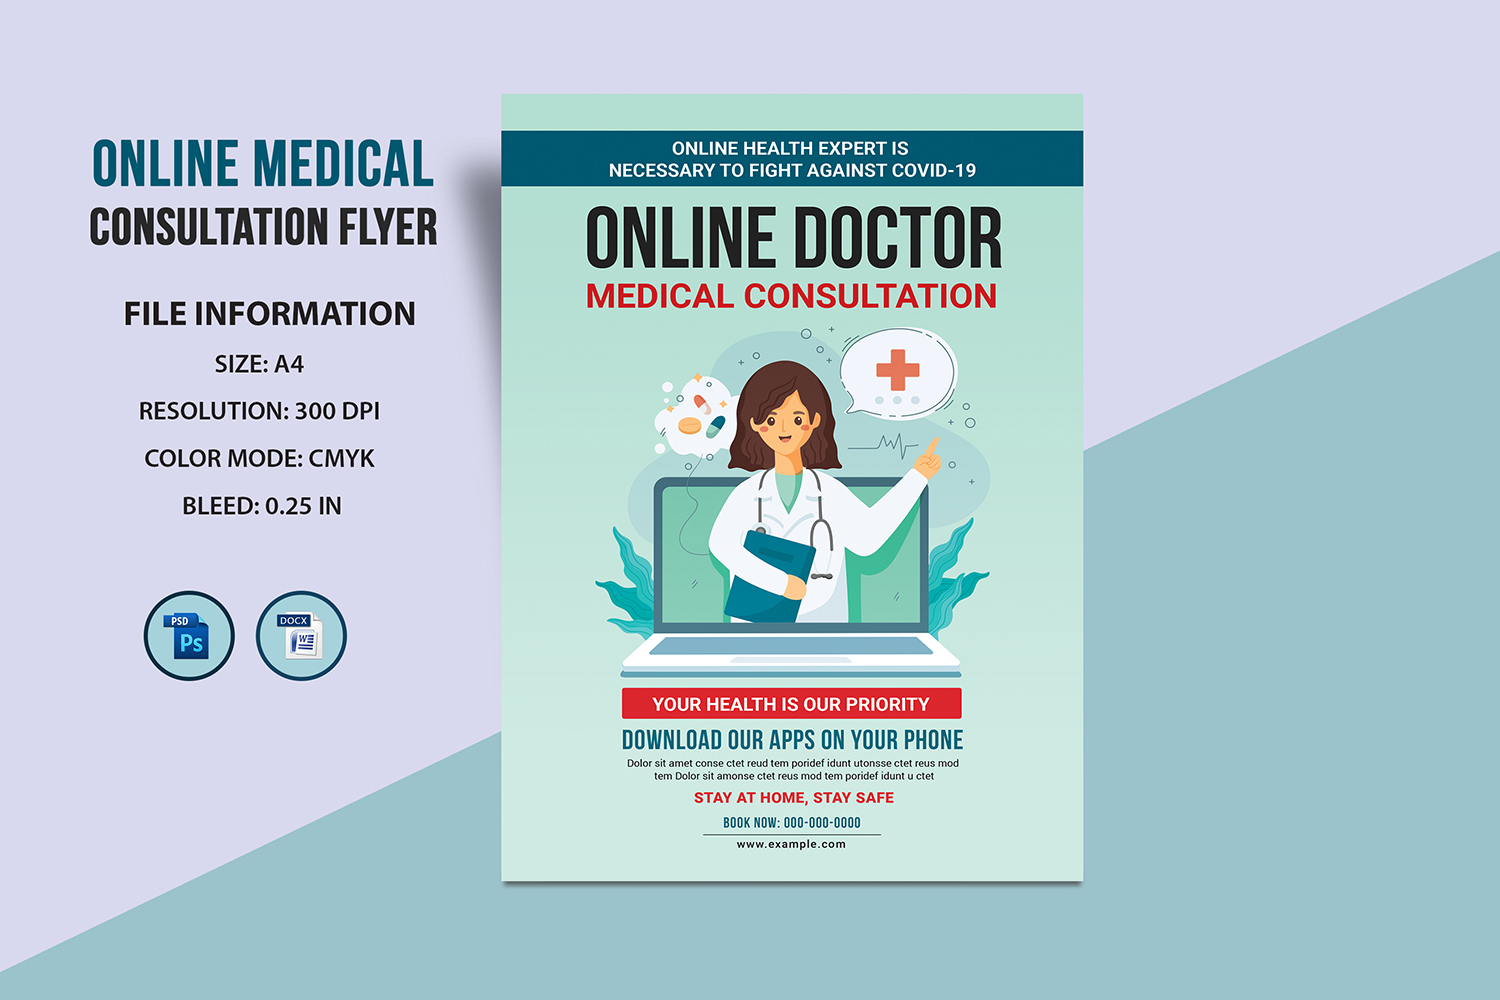 Online Medical Consultation Flyer